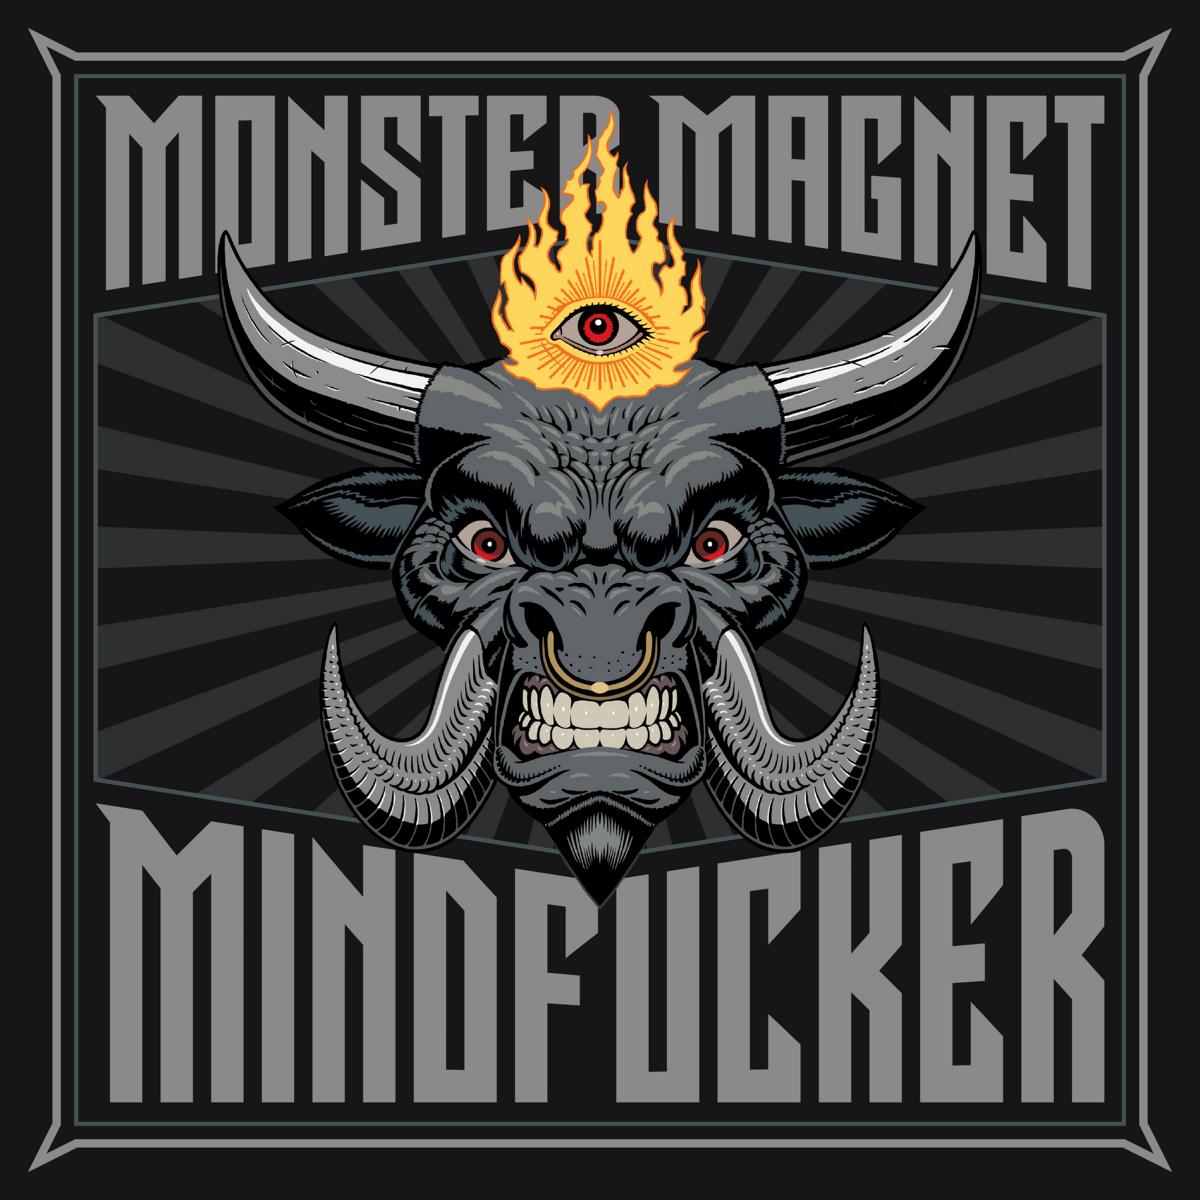 http://theobelisk.net/obelisk/wp-content/uploads/2017/12/monster-magnet-mindfucker.jpg